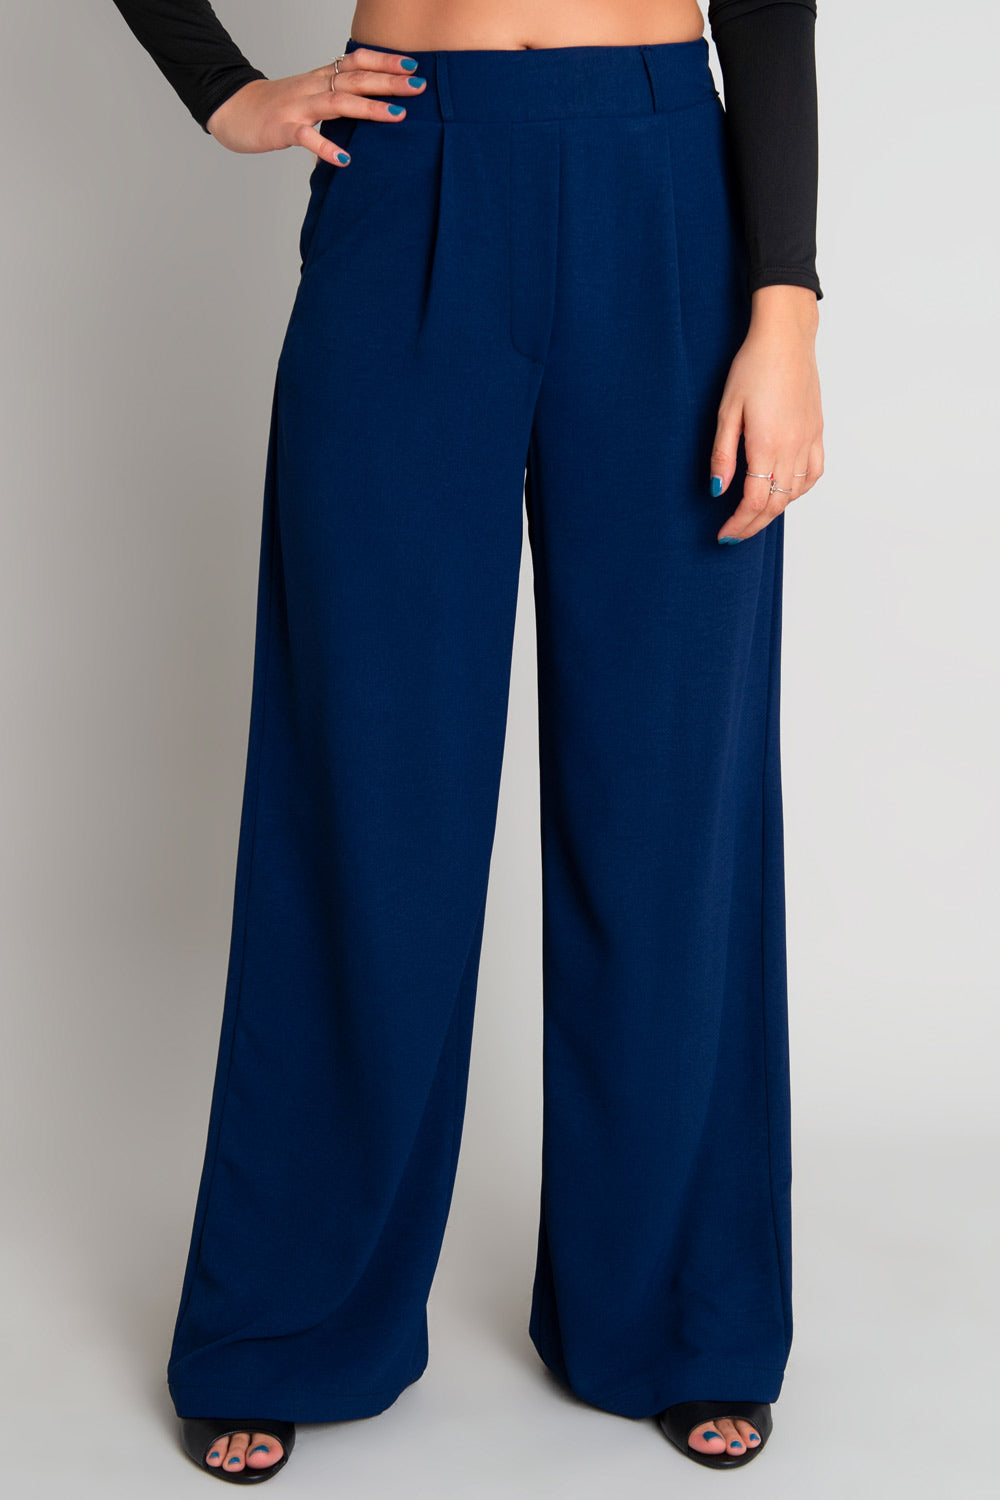 Pantalón Urbano Ejecutivo Dama - Azul marino — TextilShop